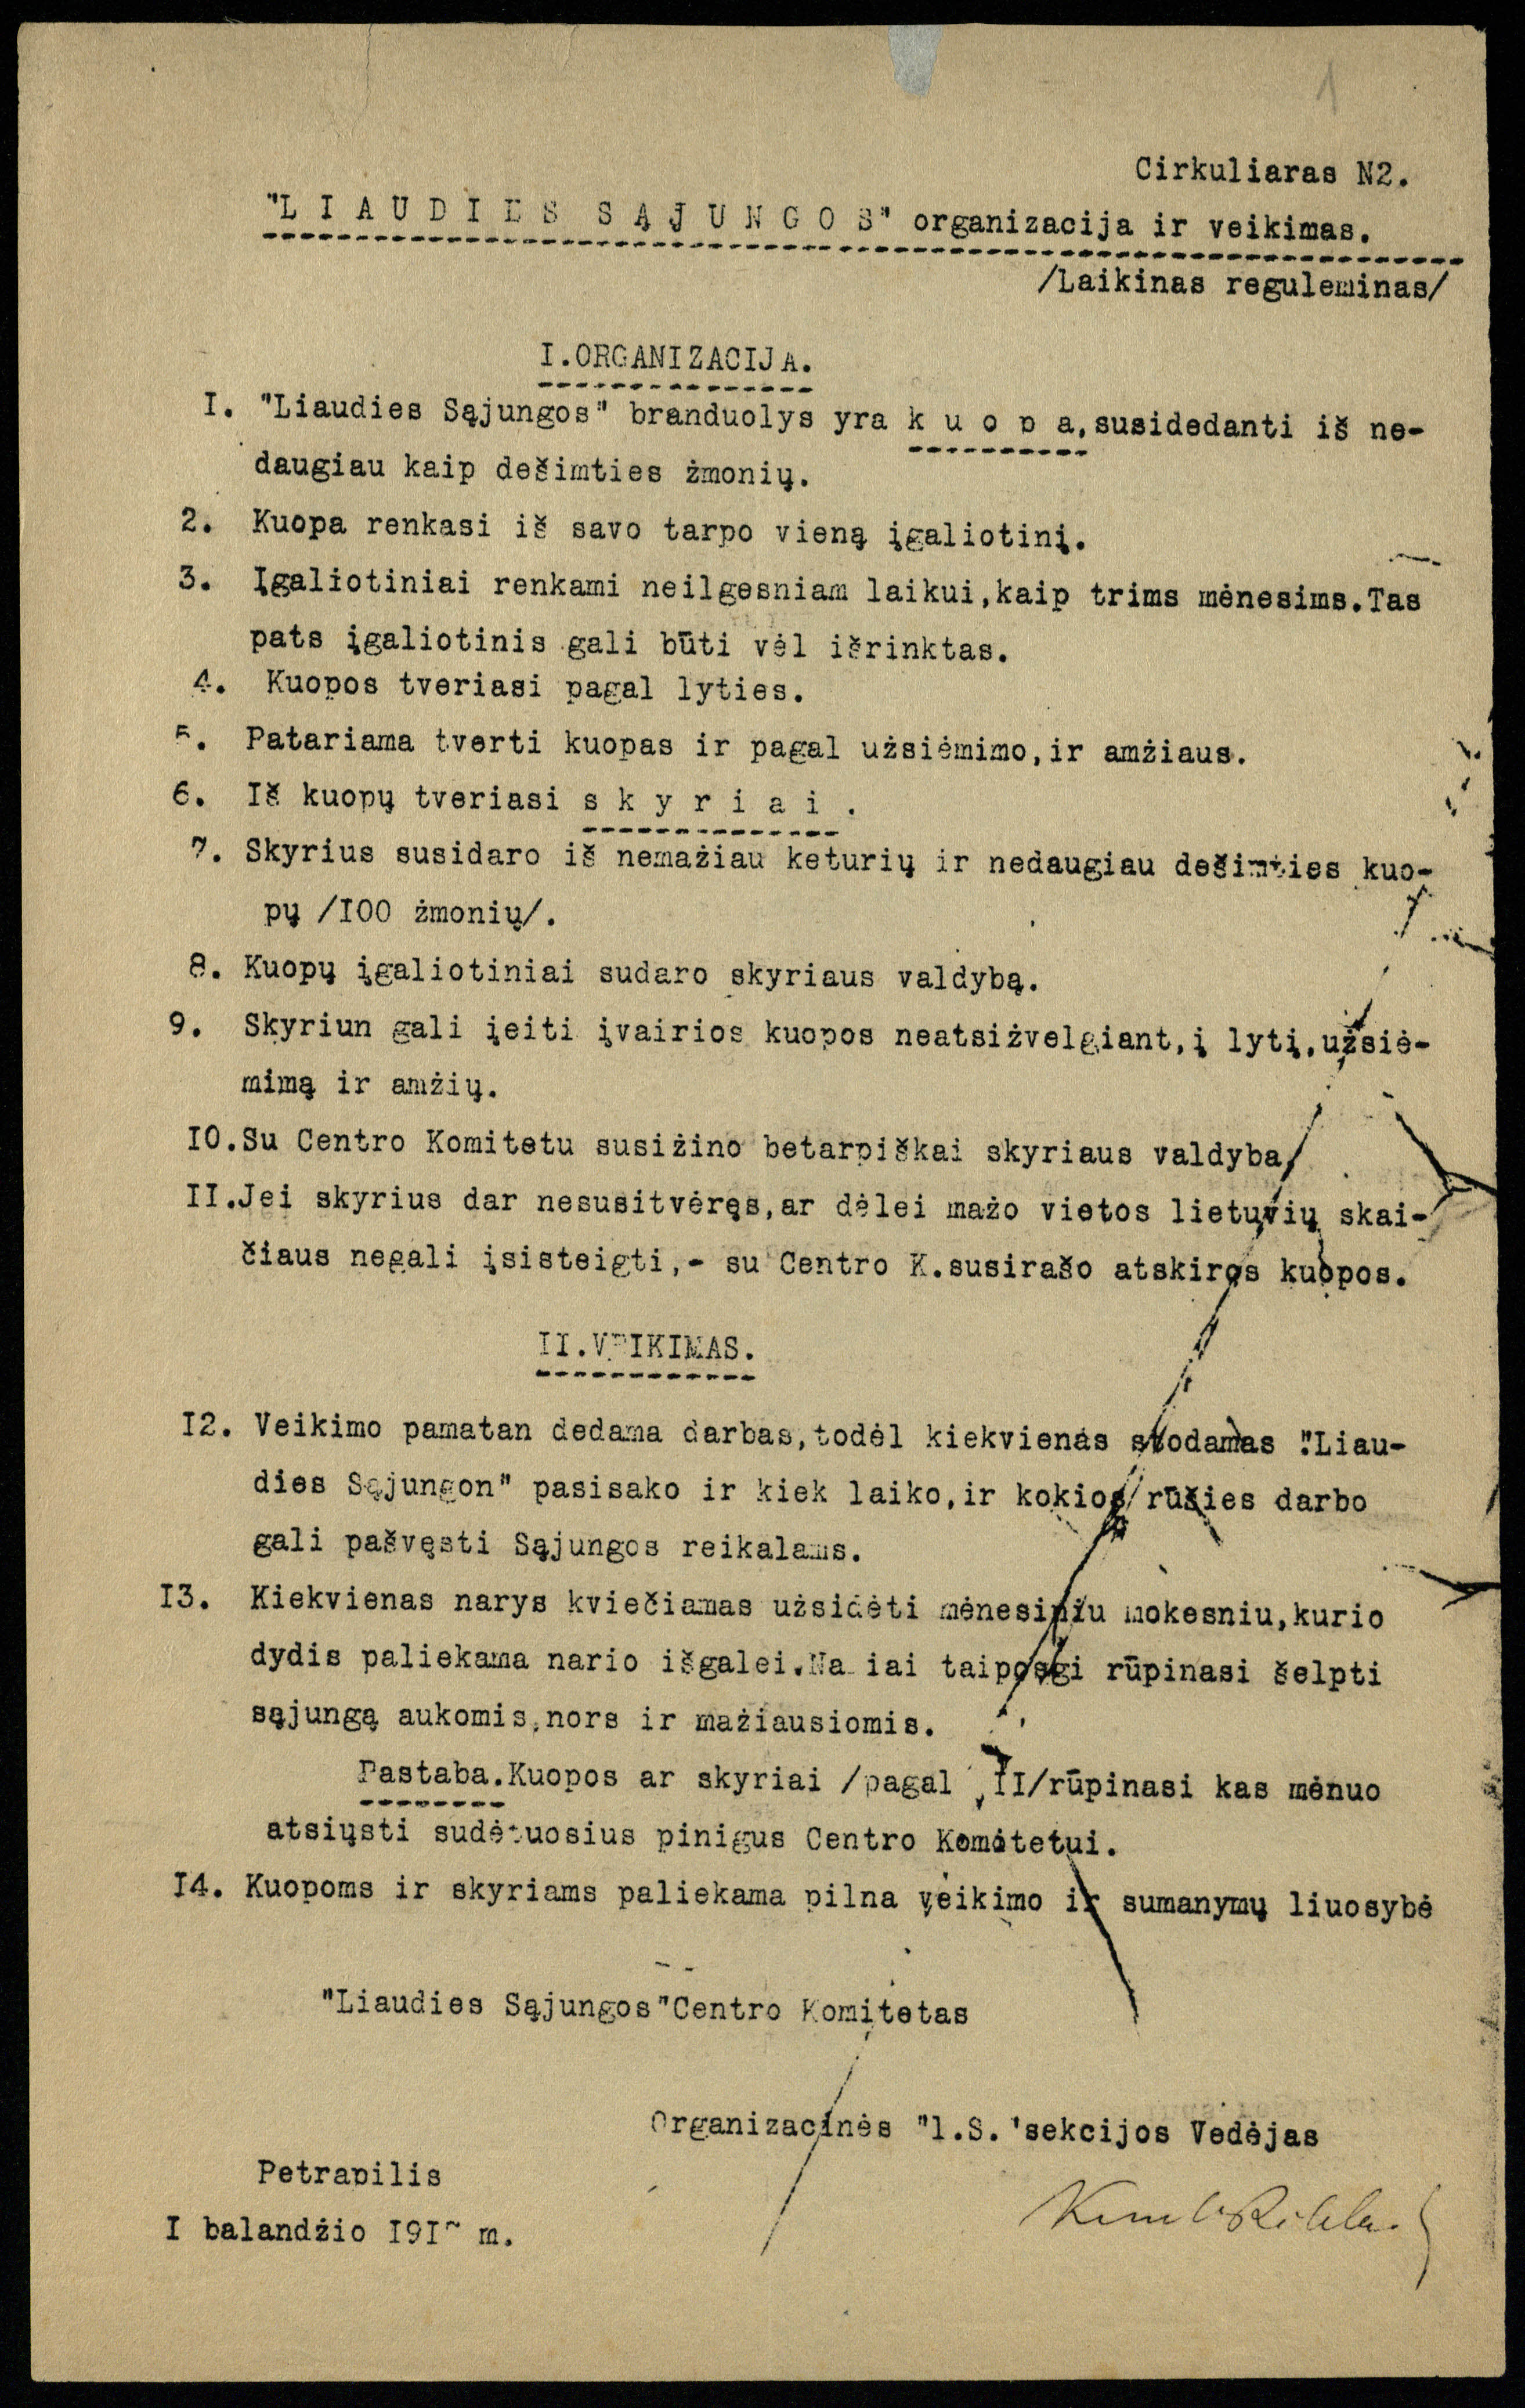 Liaudies sąjungos organizacija ir veikimas: laikinas reguleminas. Petrapilis, 1917 04 01. LMAVB RS, F12-3493, lap. 1.